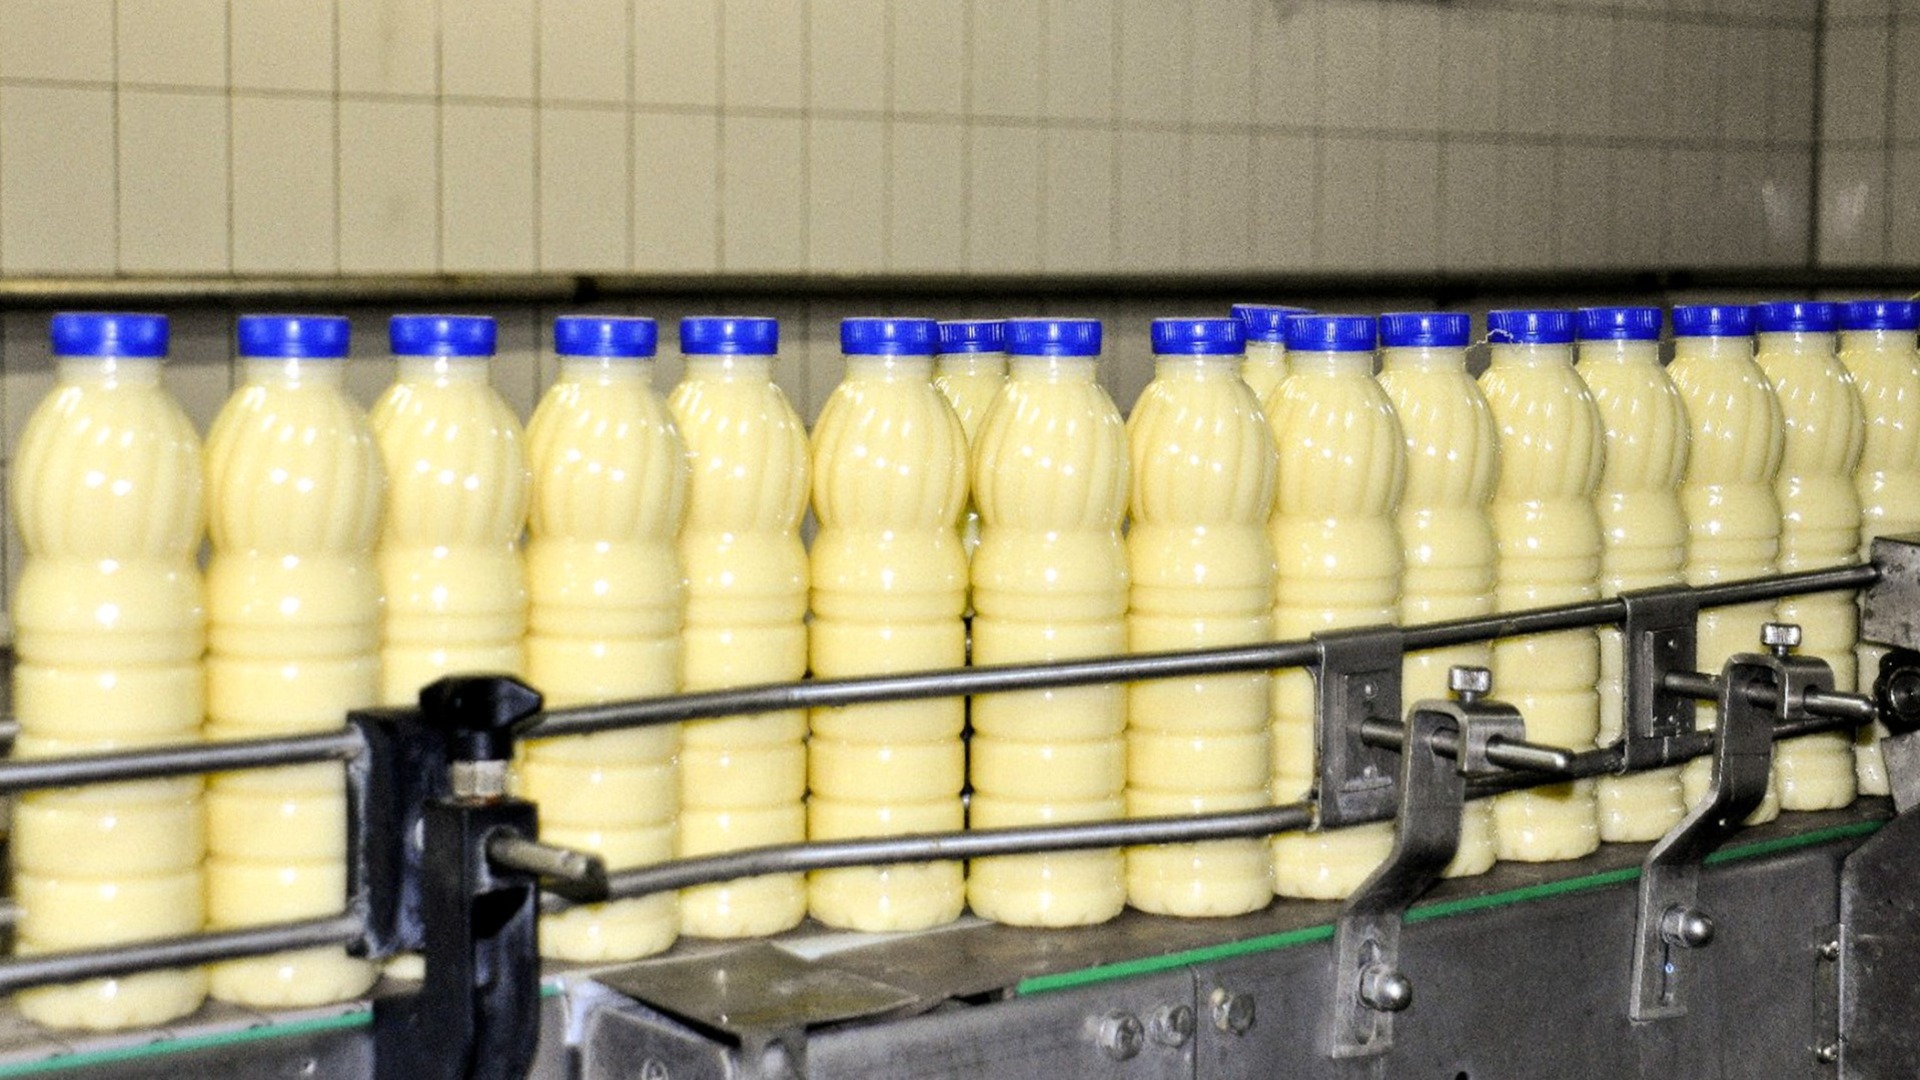 Опасные мед и молочная продукция изъяты у пассажиров в Кольцово